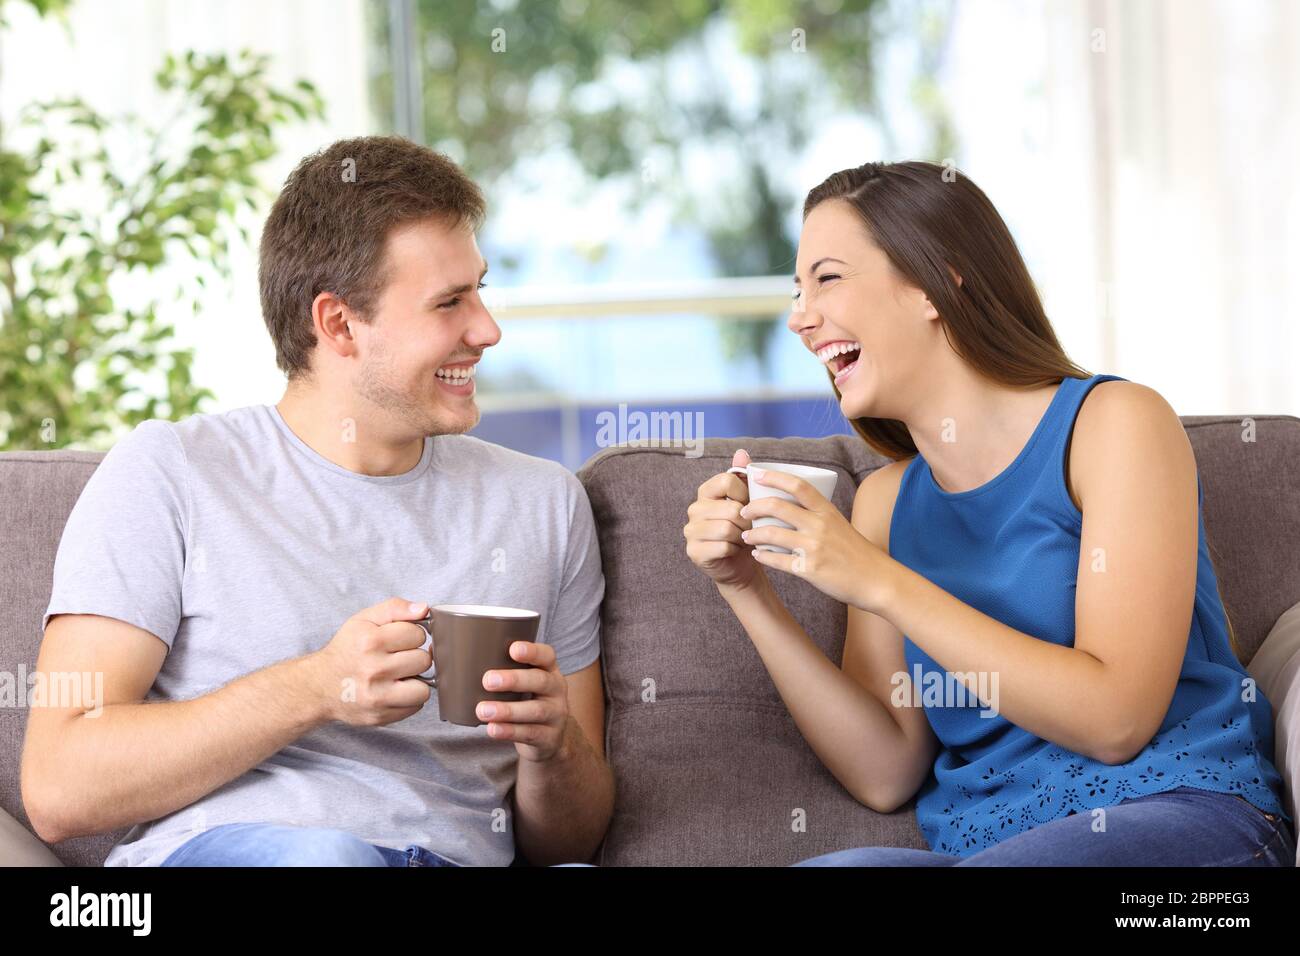 Сидим беседуем. Два человека смеются. Человек сидит смеется. Люди разговаривают и смеются. Парень смеется.